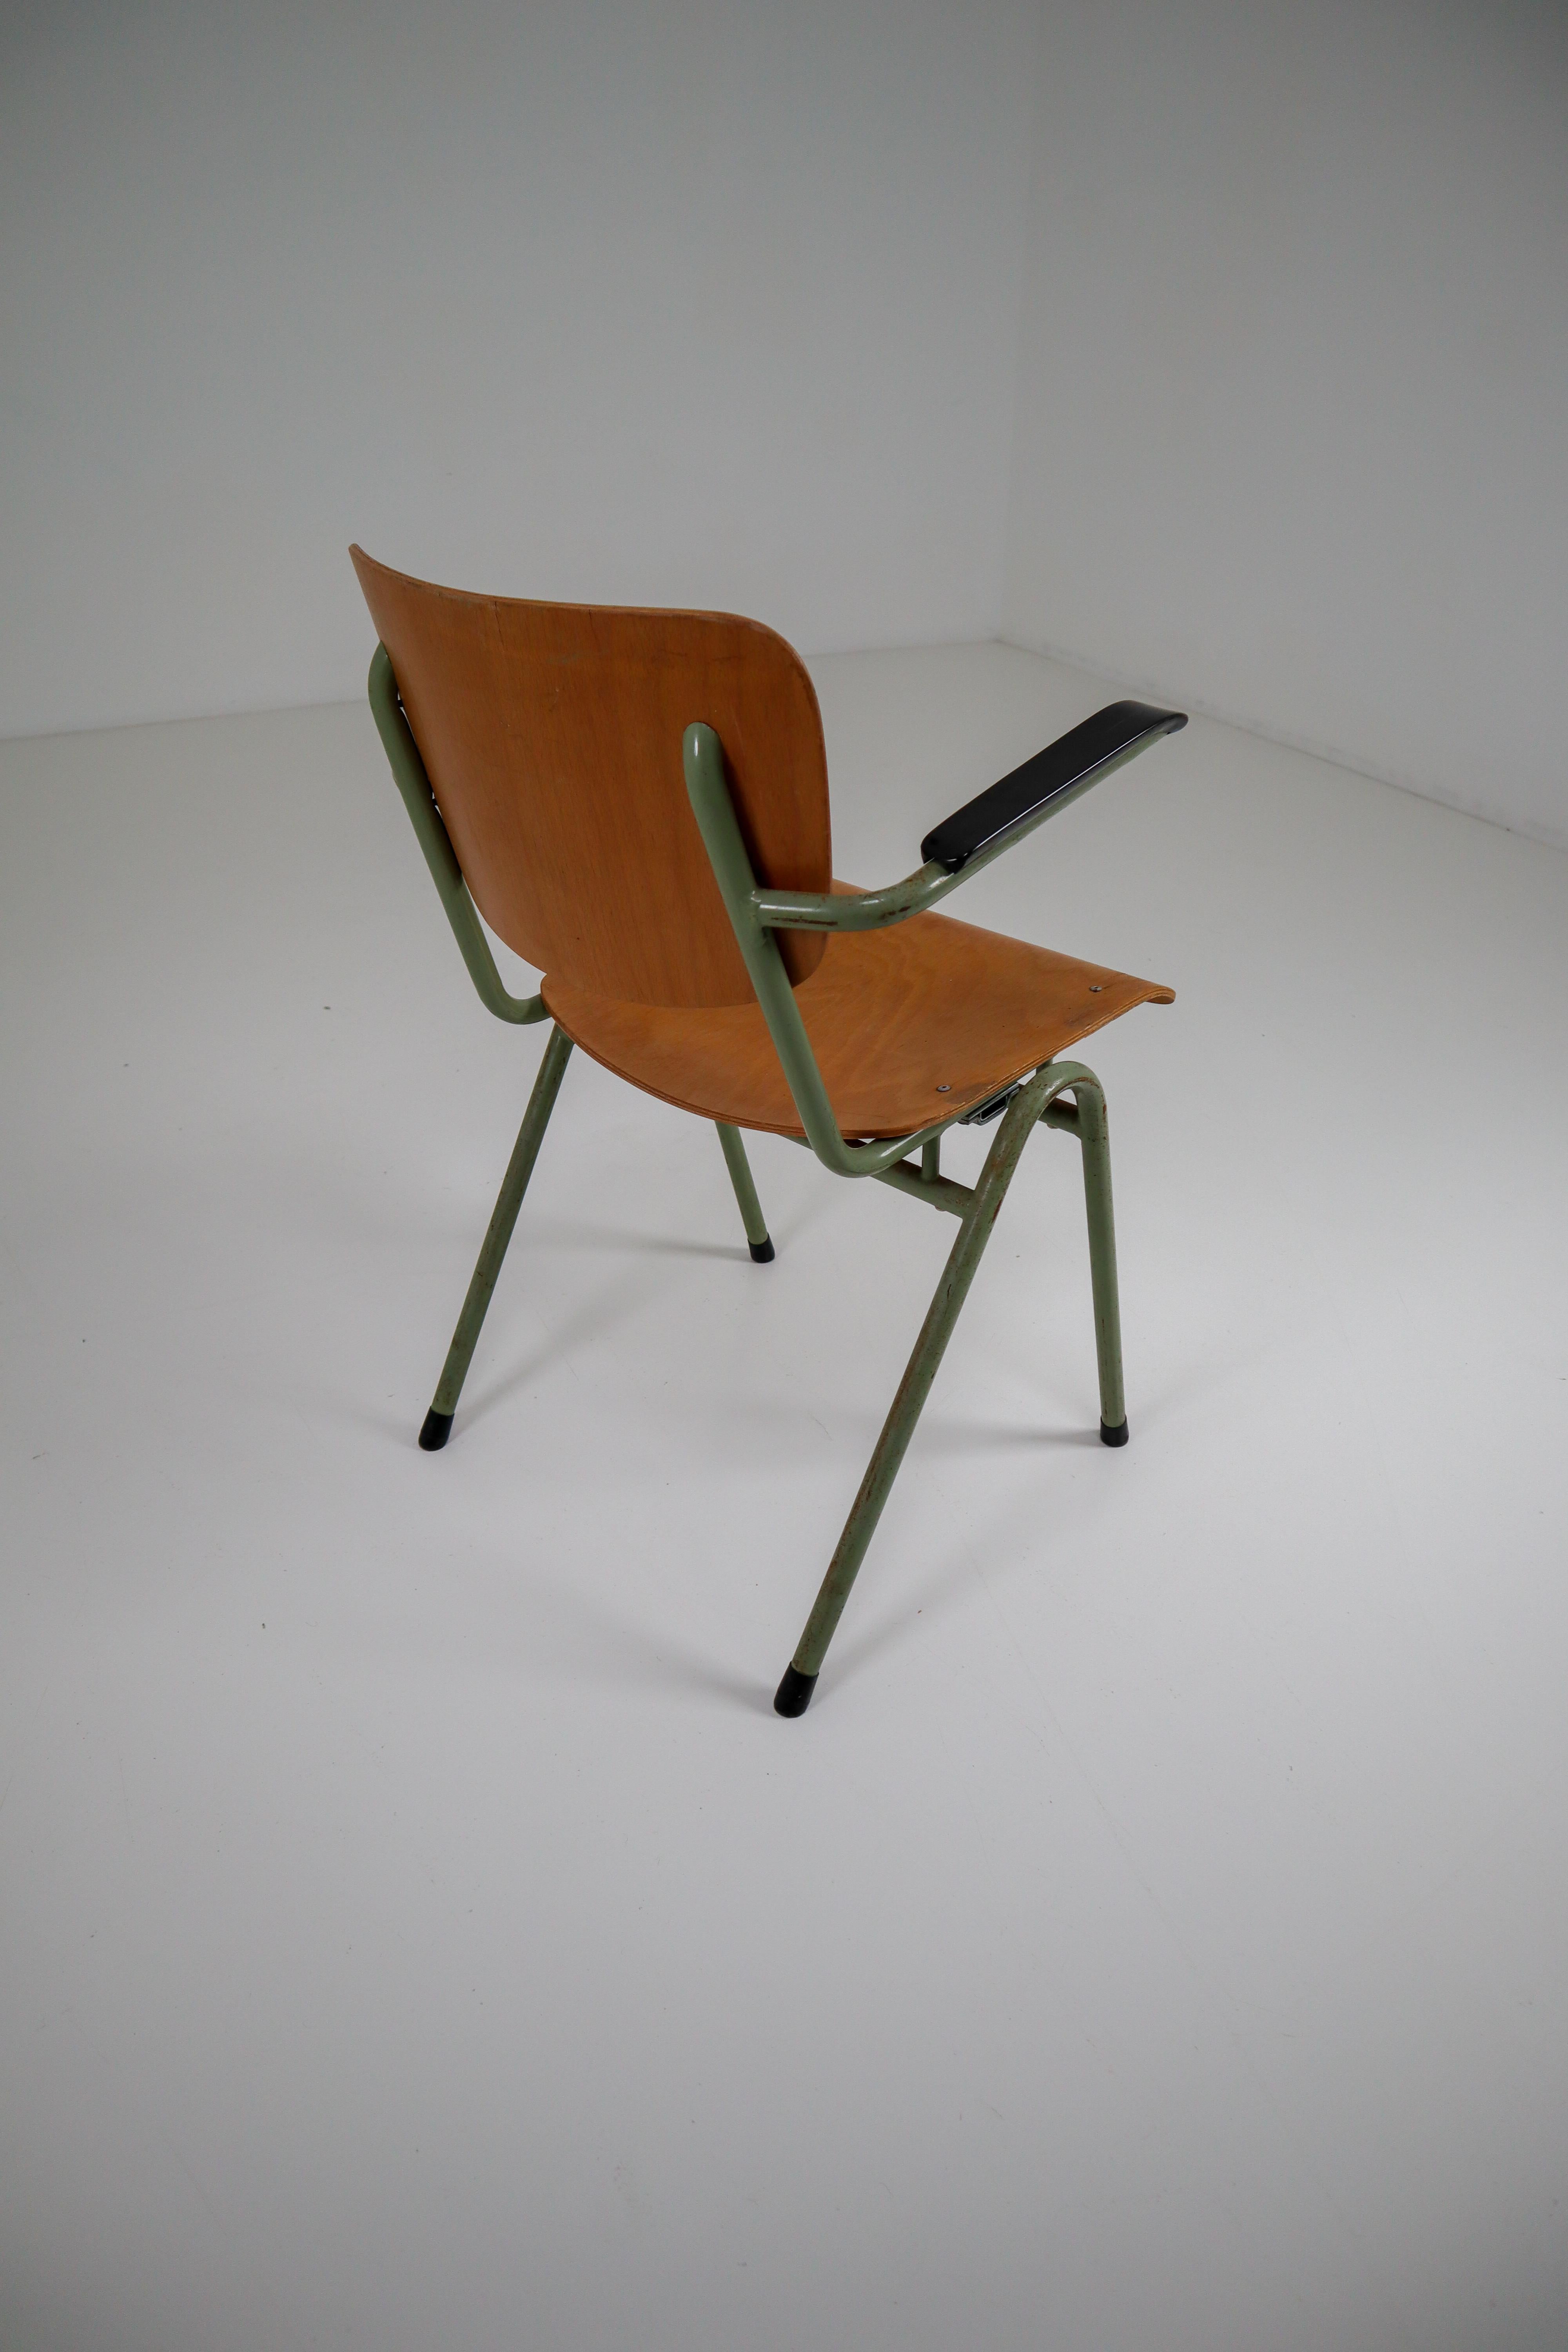 100 Green Patinated Dutch Design Industrial Plywood Armchairs, 1960s (Niederländisch)